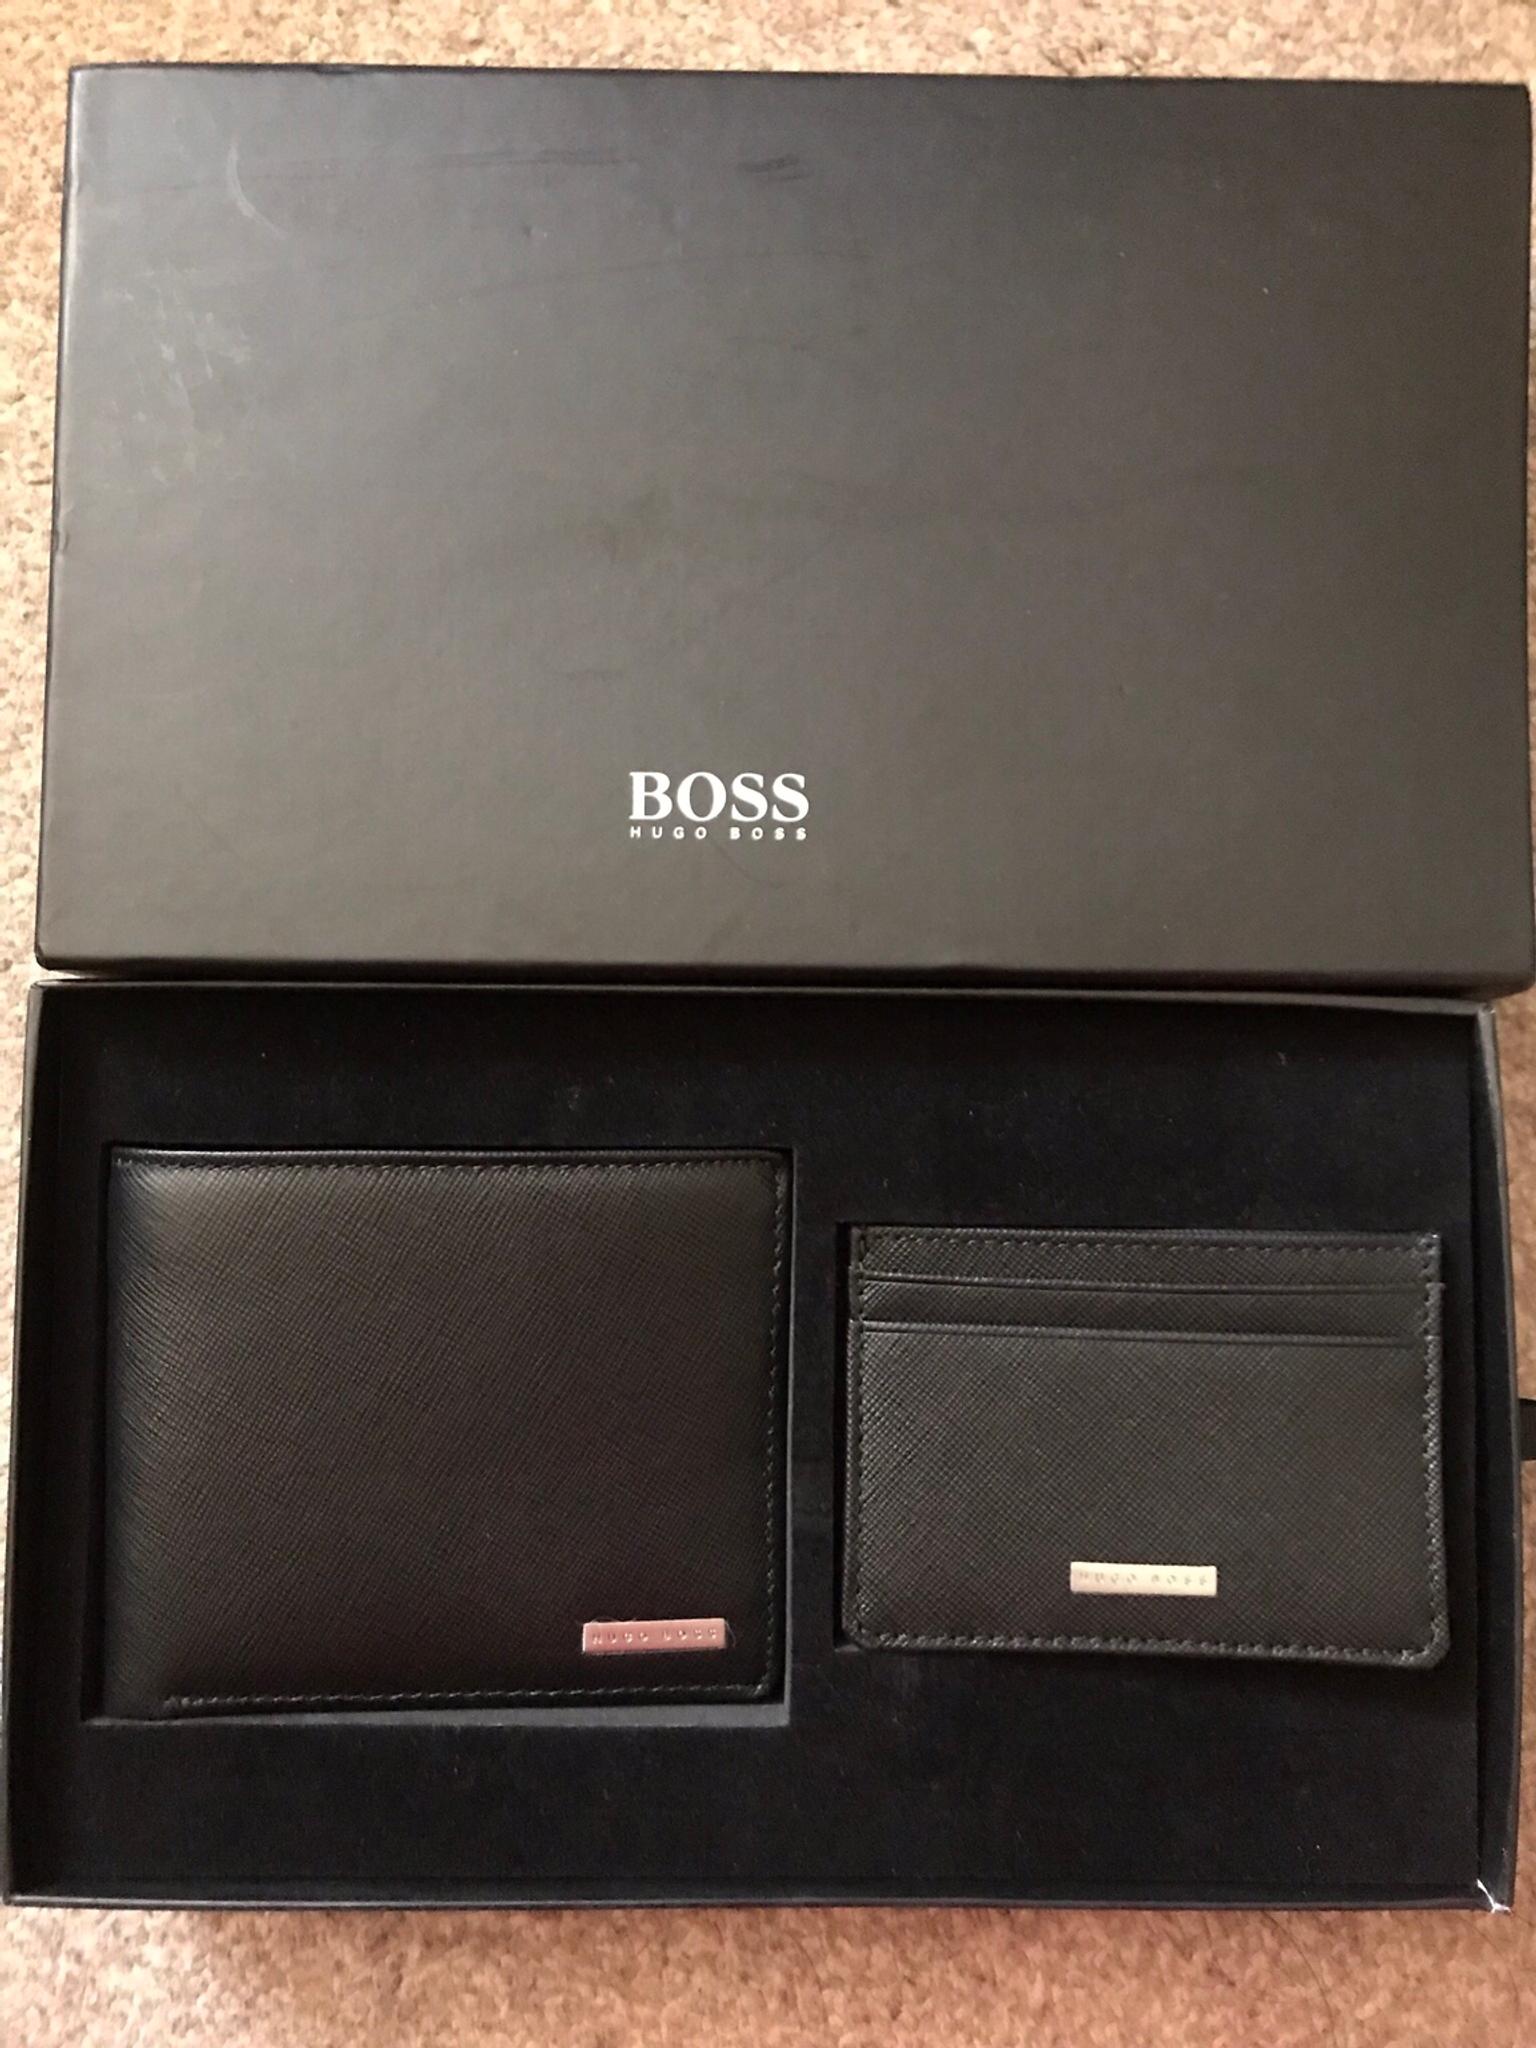 hugo boss wallet and card holder set